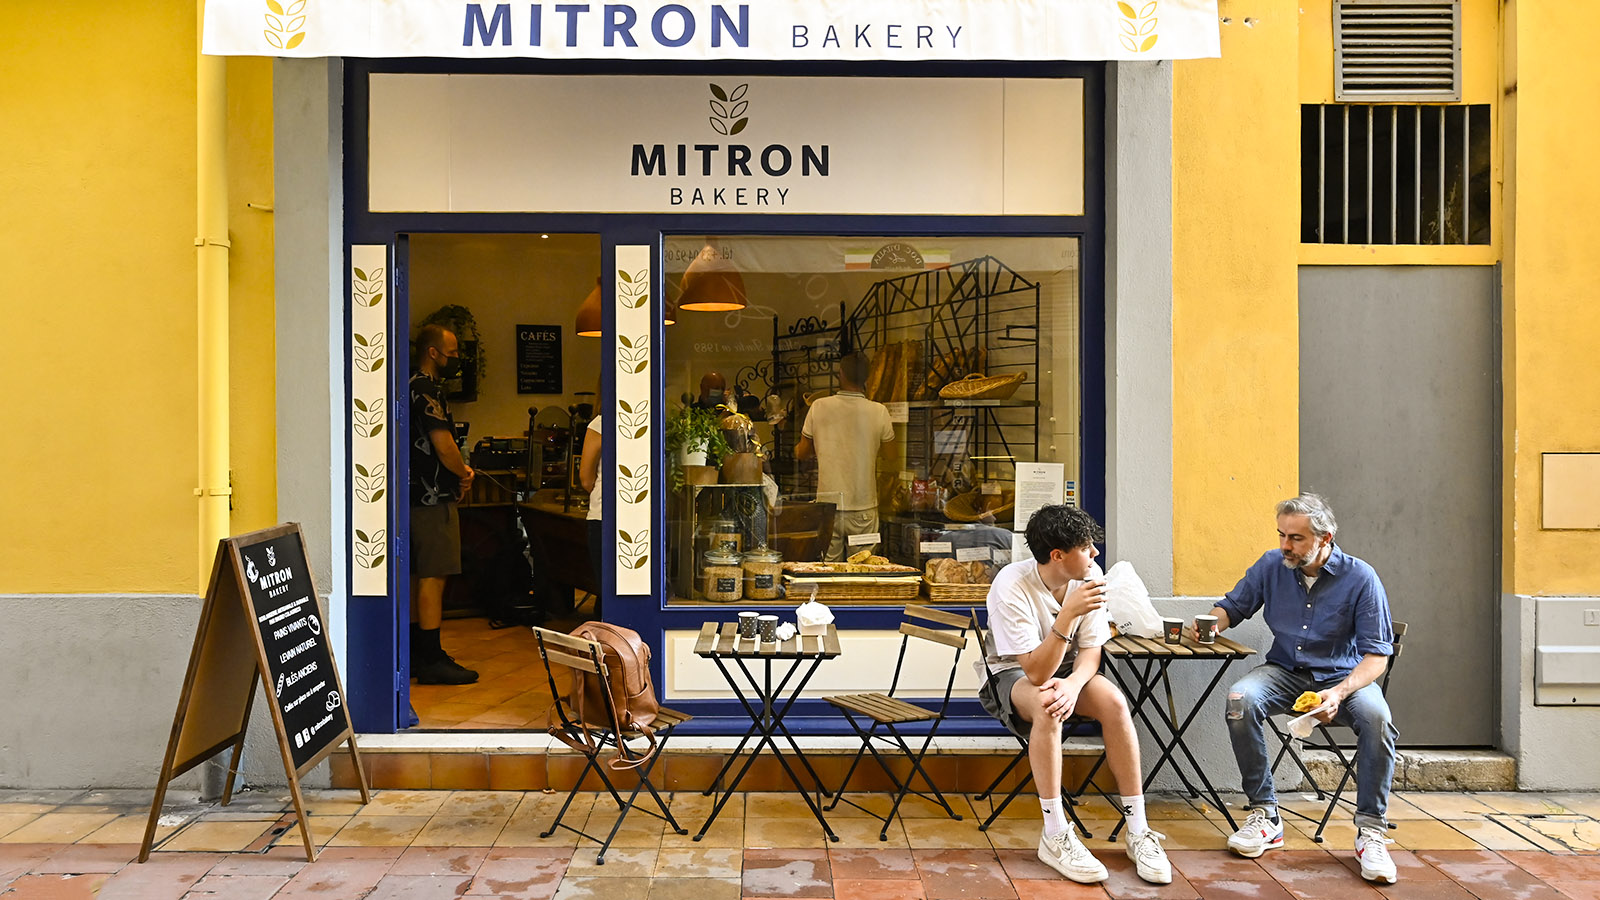 Mitron Bakery, die Bäckerei von Sternechef Colagresco. Foto: Hilke Maunder